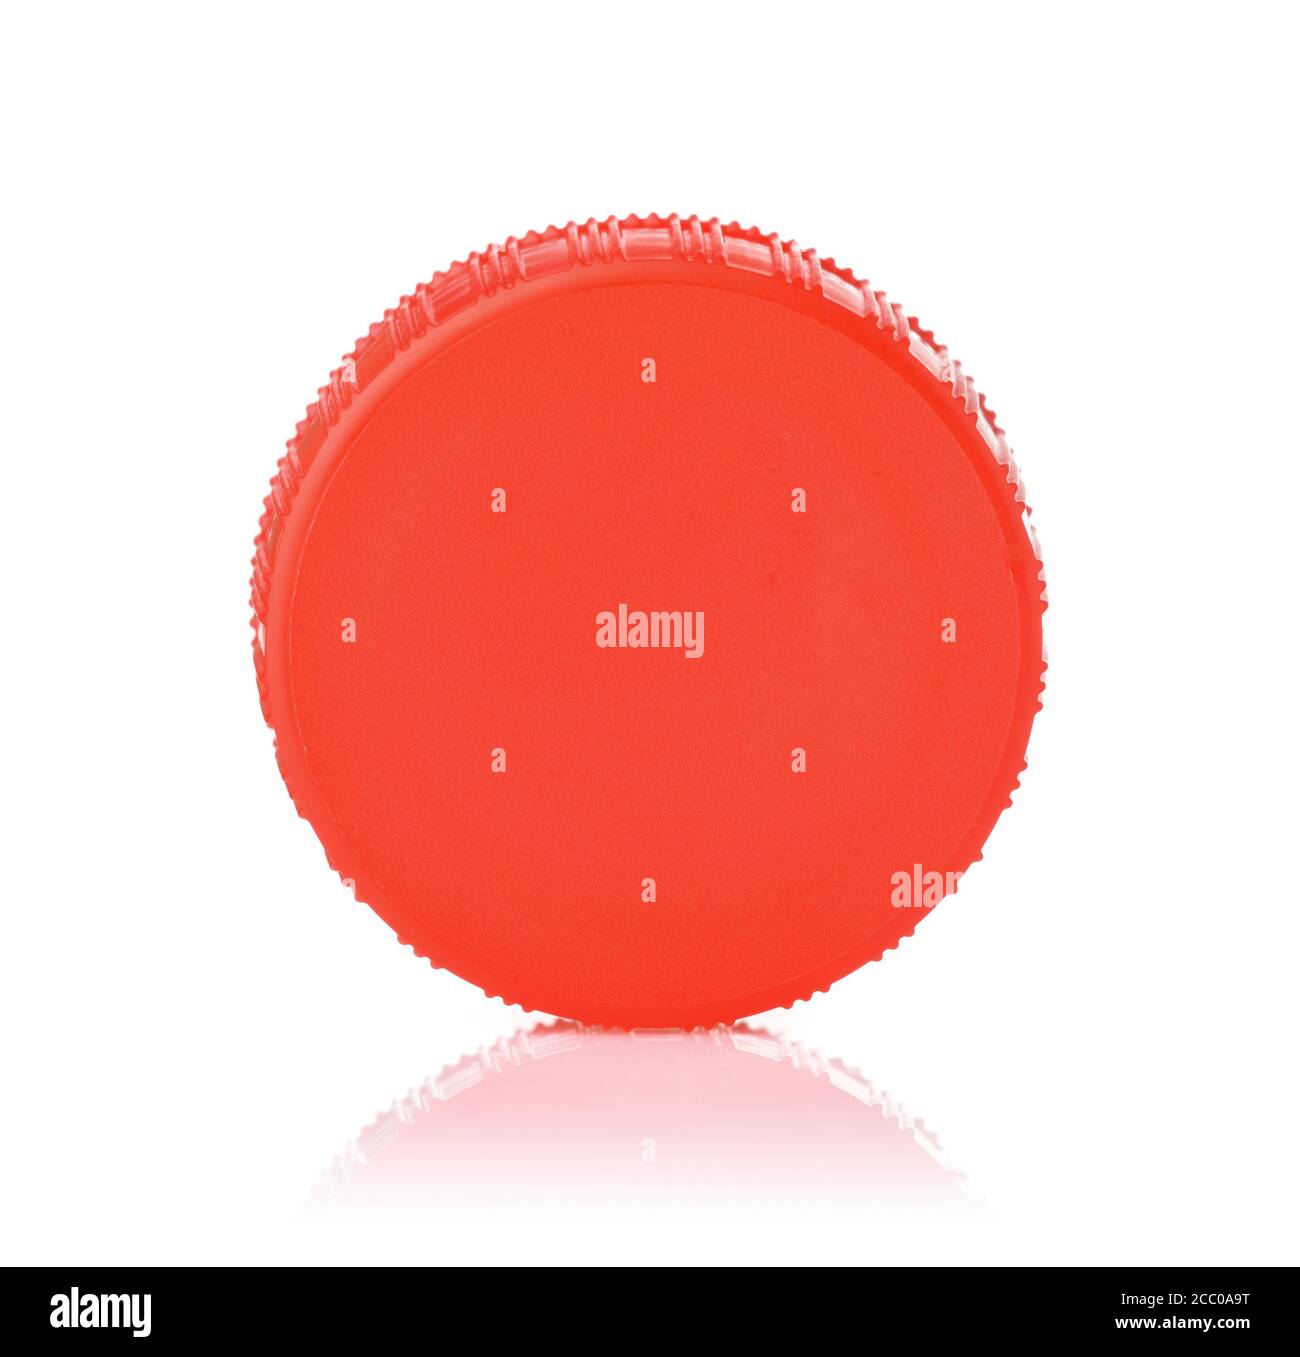 Cerchio di plastica immagini e fotografie stock ad alta risoluzione - Alamy